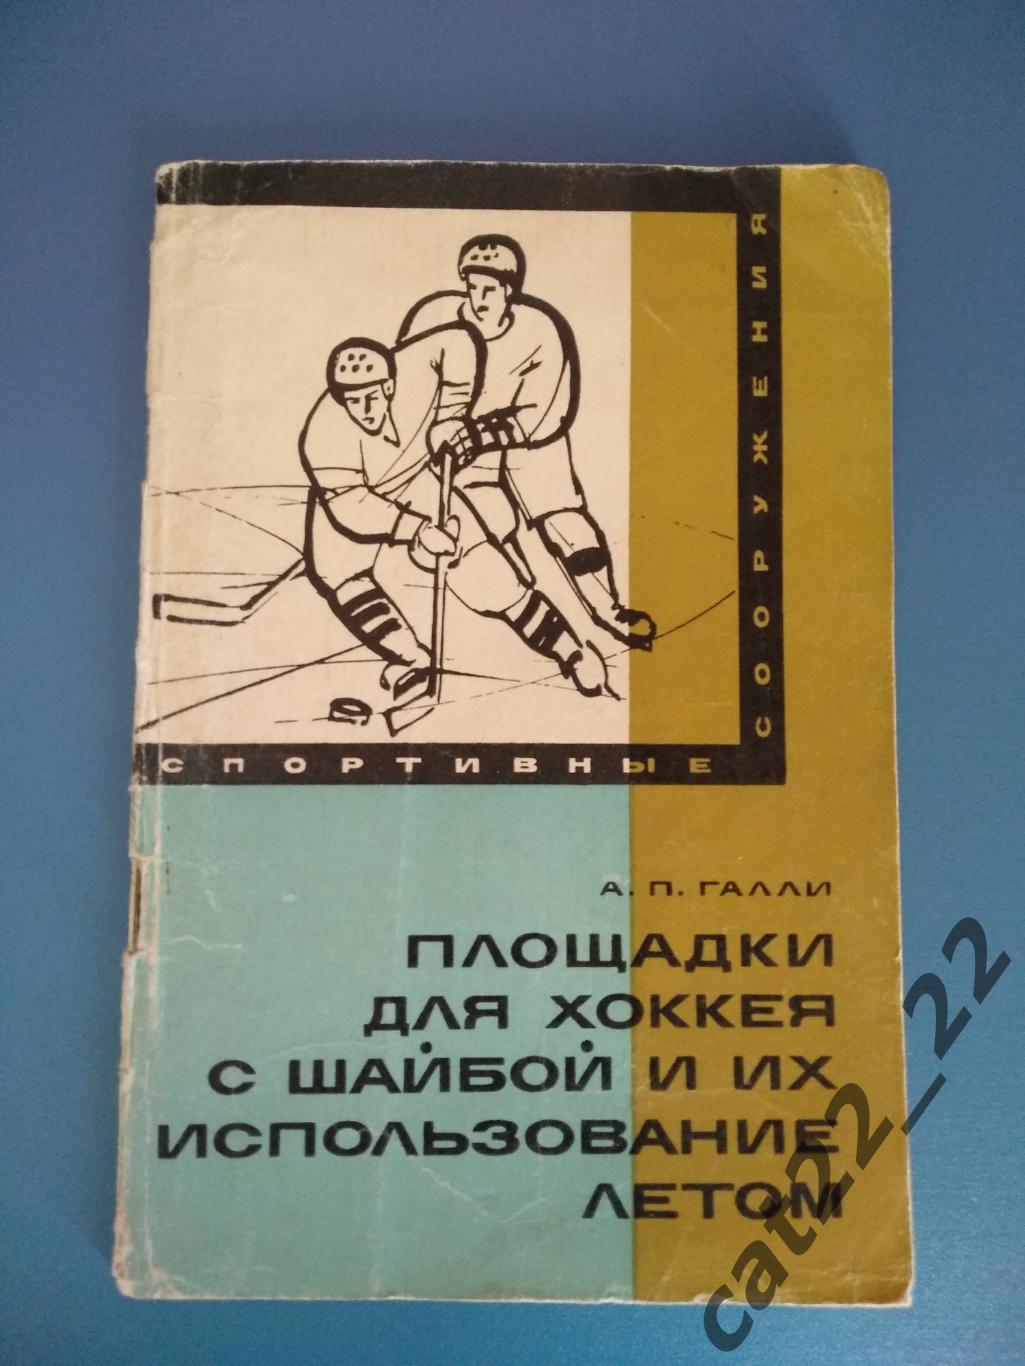 Книга/издание: Хоккей. Площадки для хоккея с шайбой. Москва СССР/Россия 1968